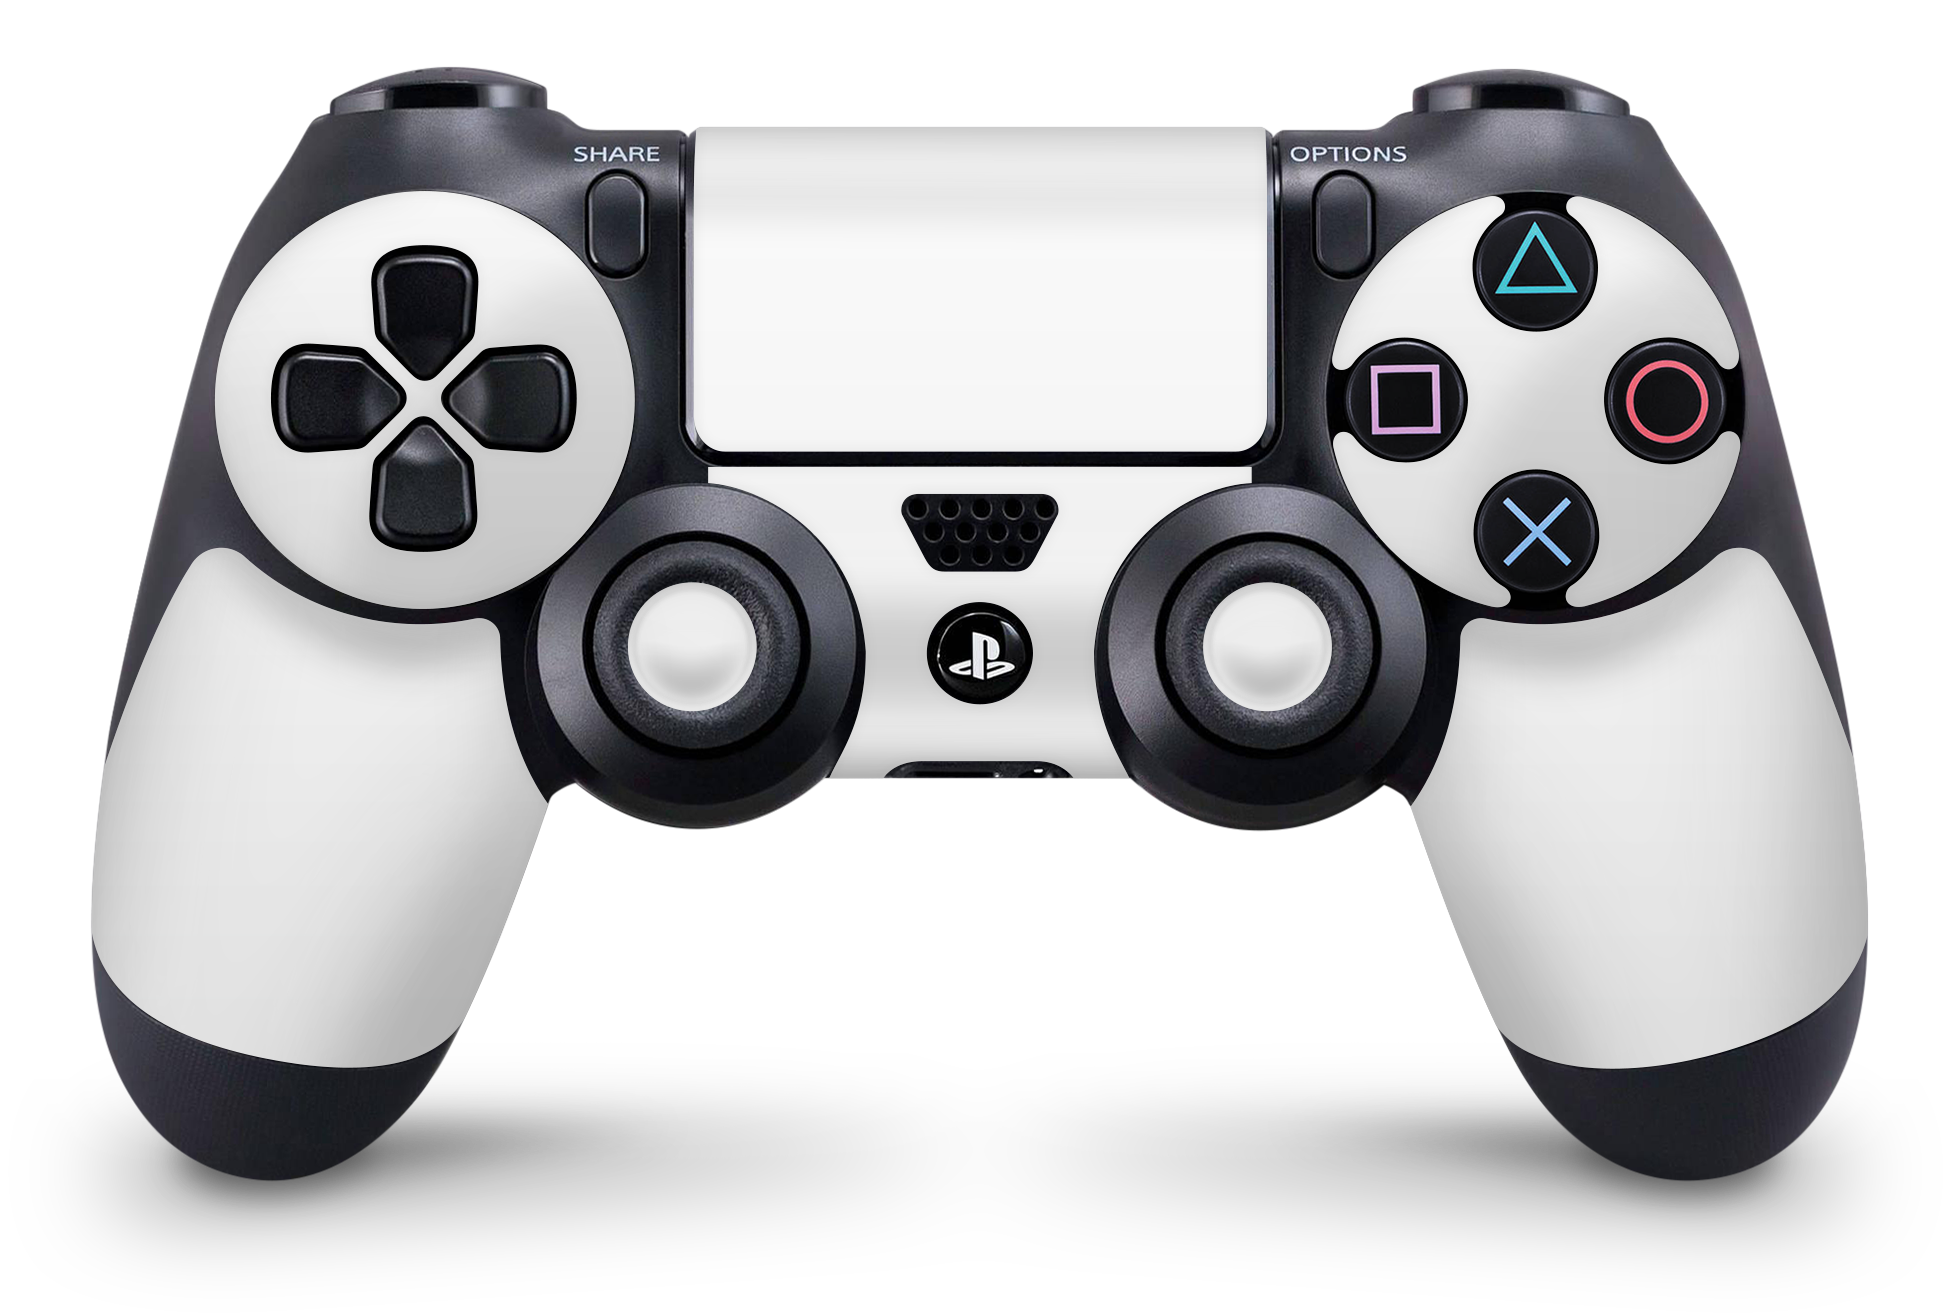 PS4 Playstation 4 Controller Skins - Vinyl Skin Aufkleber für Gaming Controller Solid State white Aufkleber Skins4u   